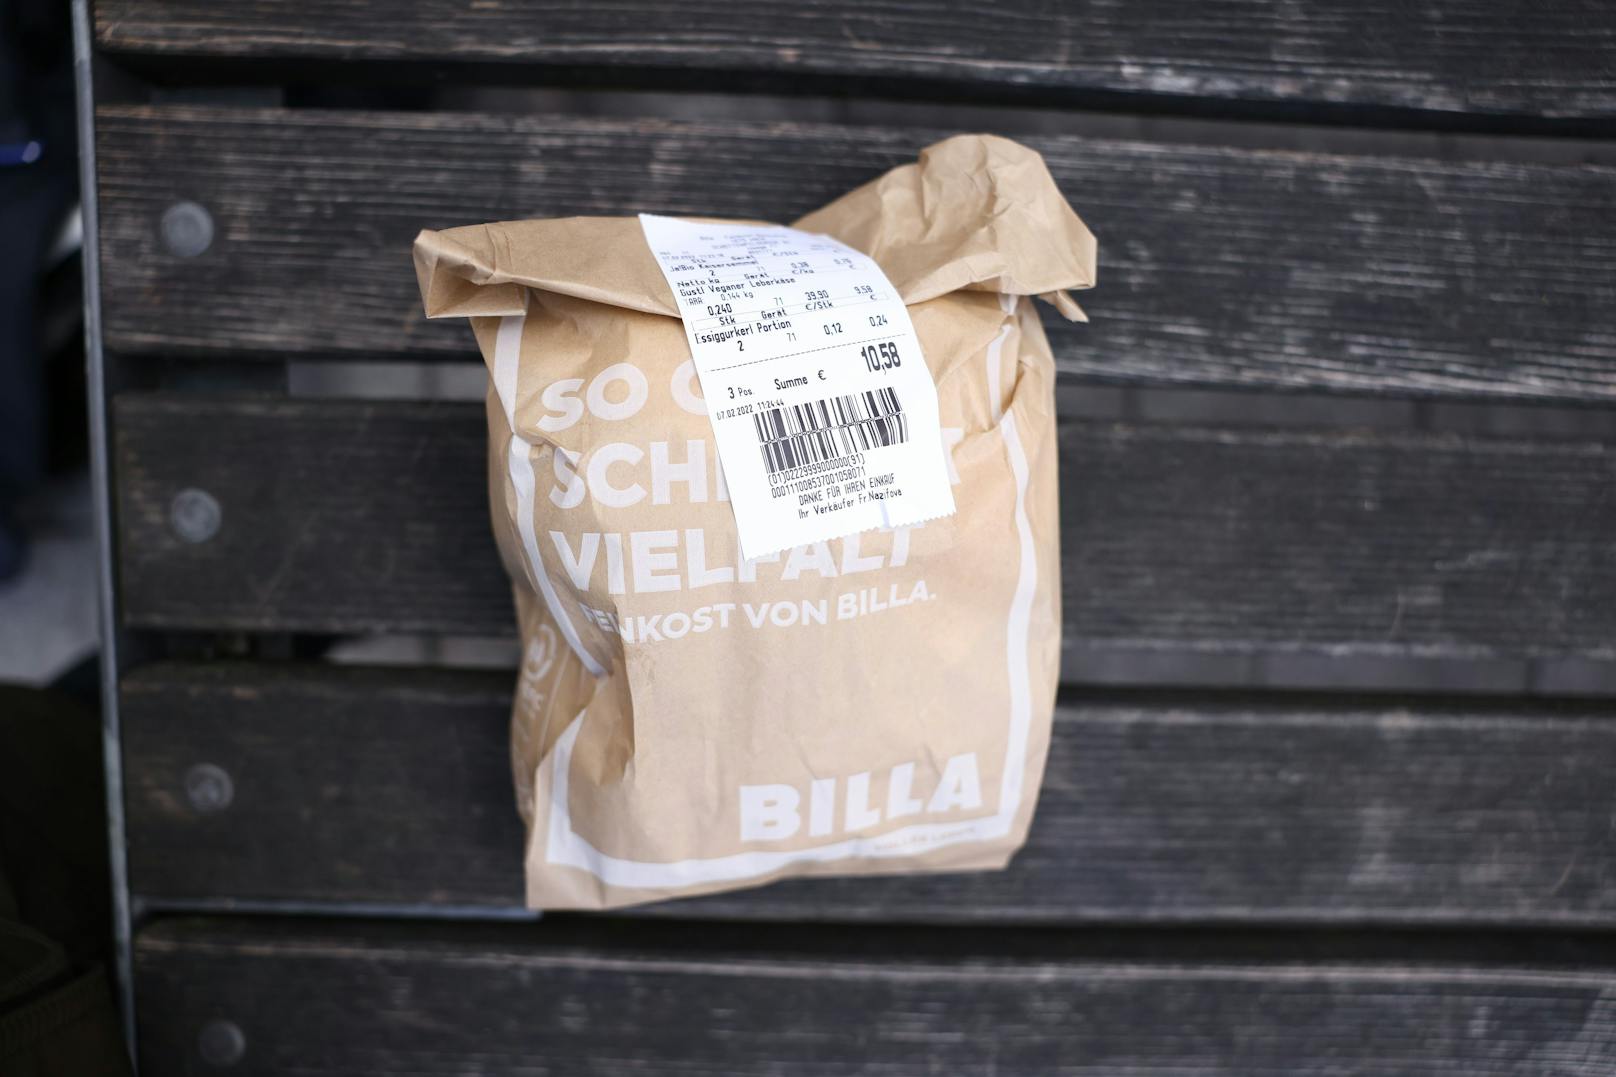 Den "Gustl" gibt es jetzt bei mehreren Billa-Filialen in Wien zu kaufen.